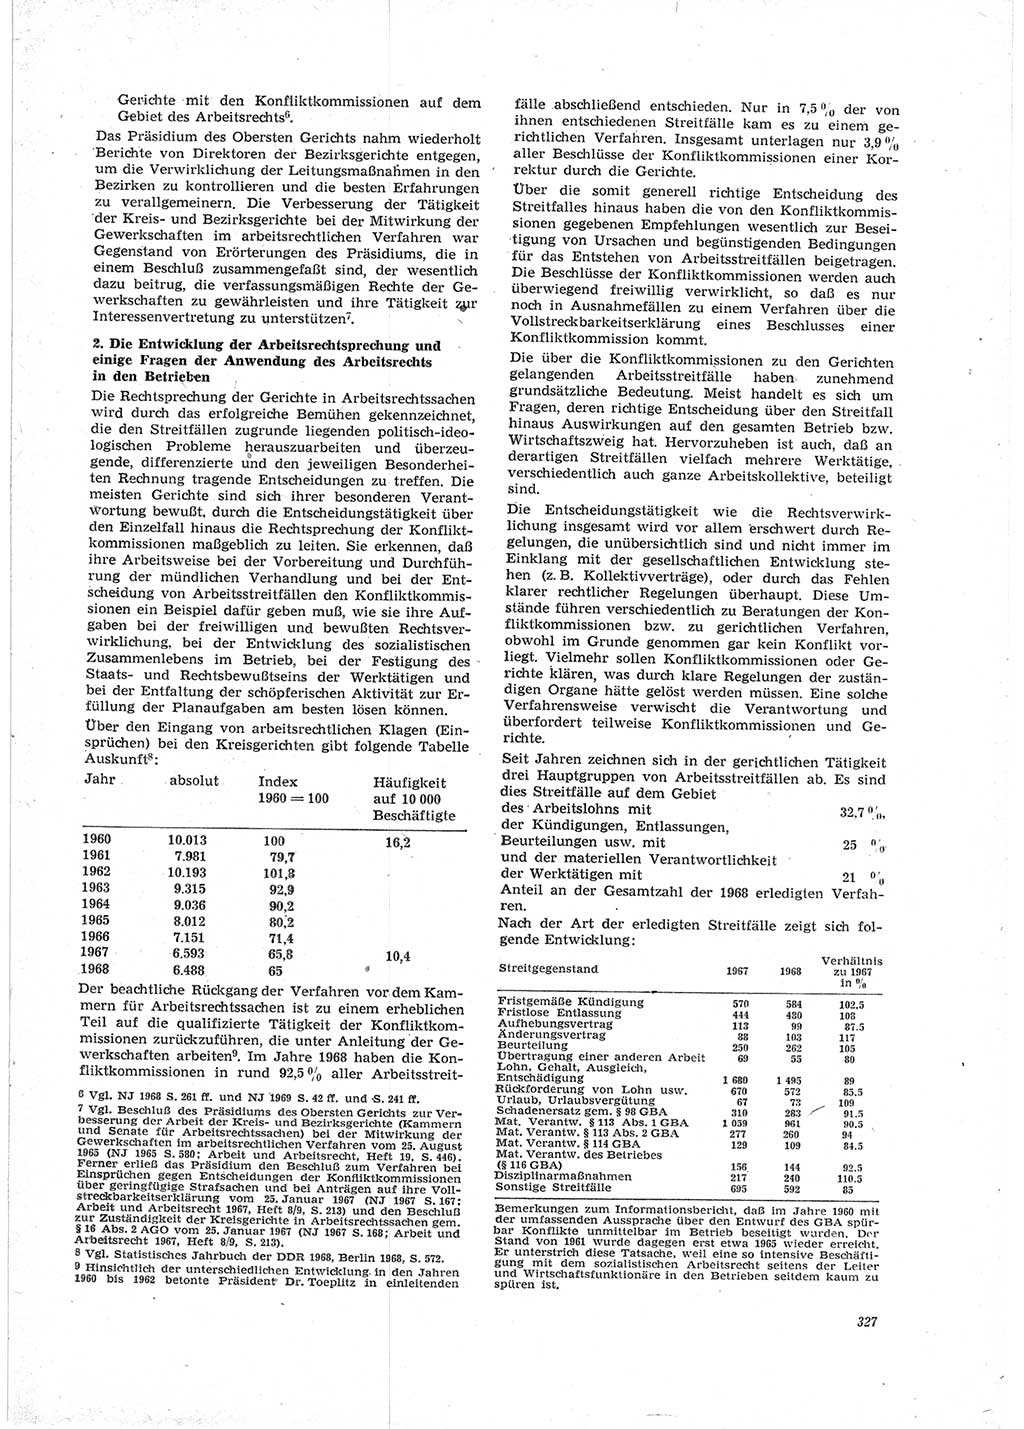 Neue Justiz (NJ), Zeitschrift für Recht und Rechtswissenschaft [Deutsche Demokratische Republik (DDR)], 23. Jahrgang 1969, Seite 327 (NJ DDR 1969, S. 327)